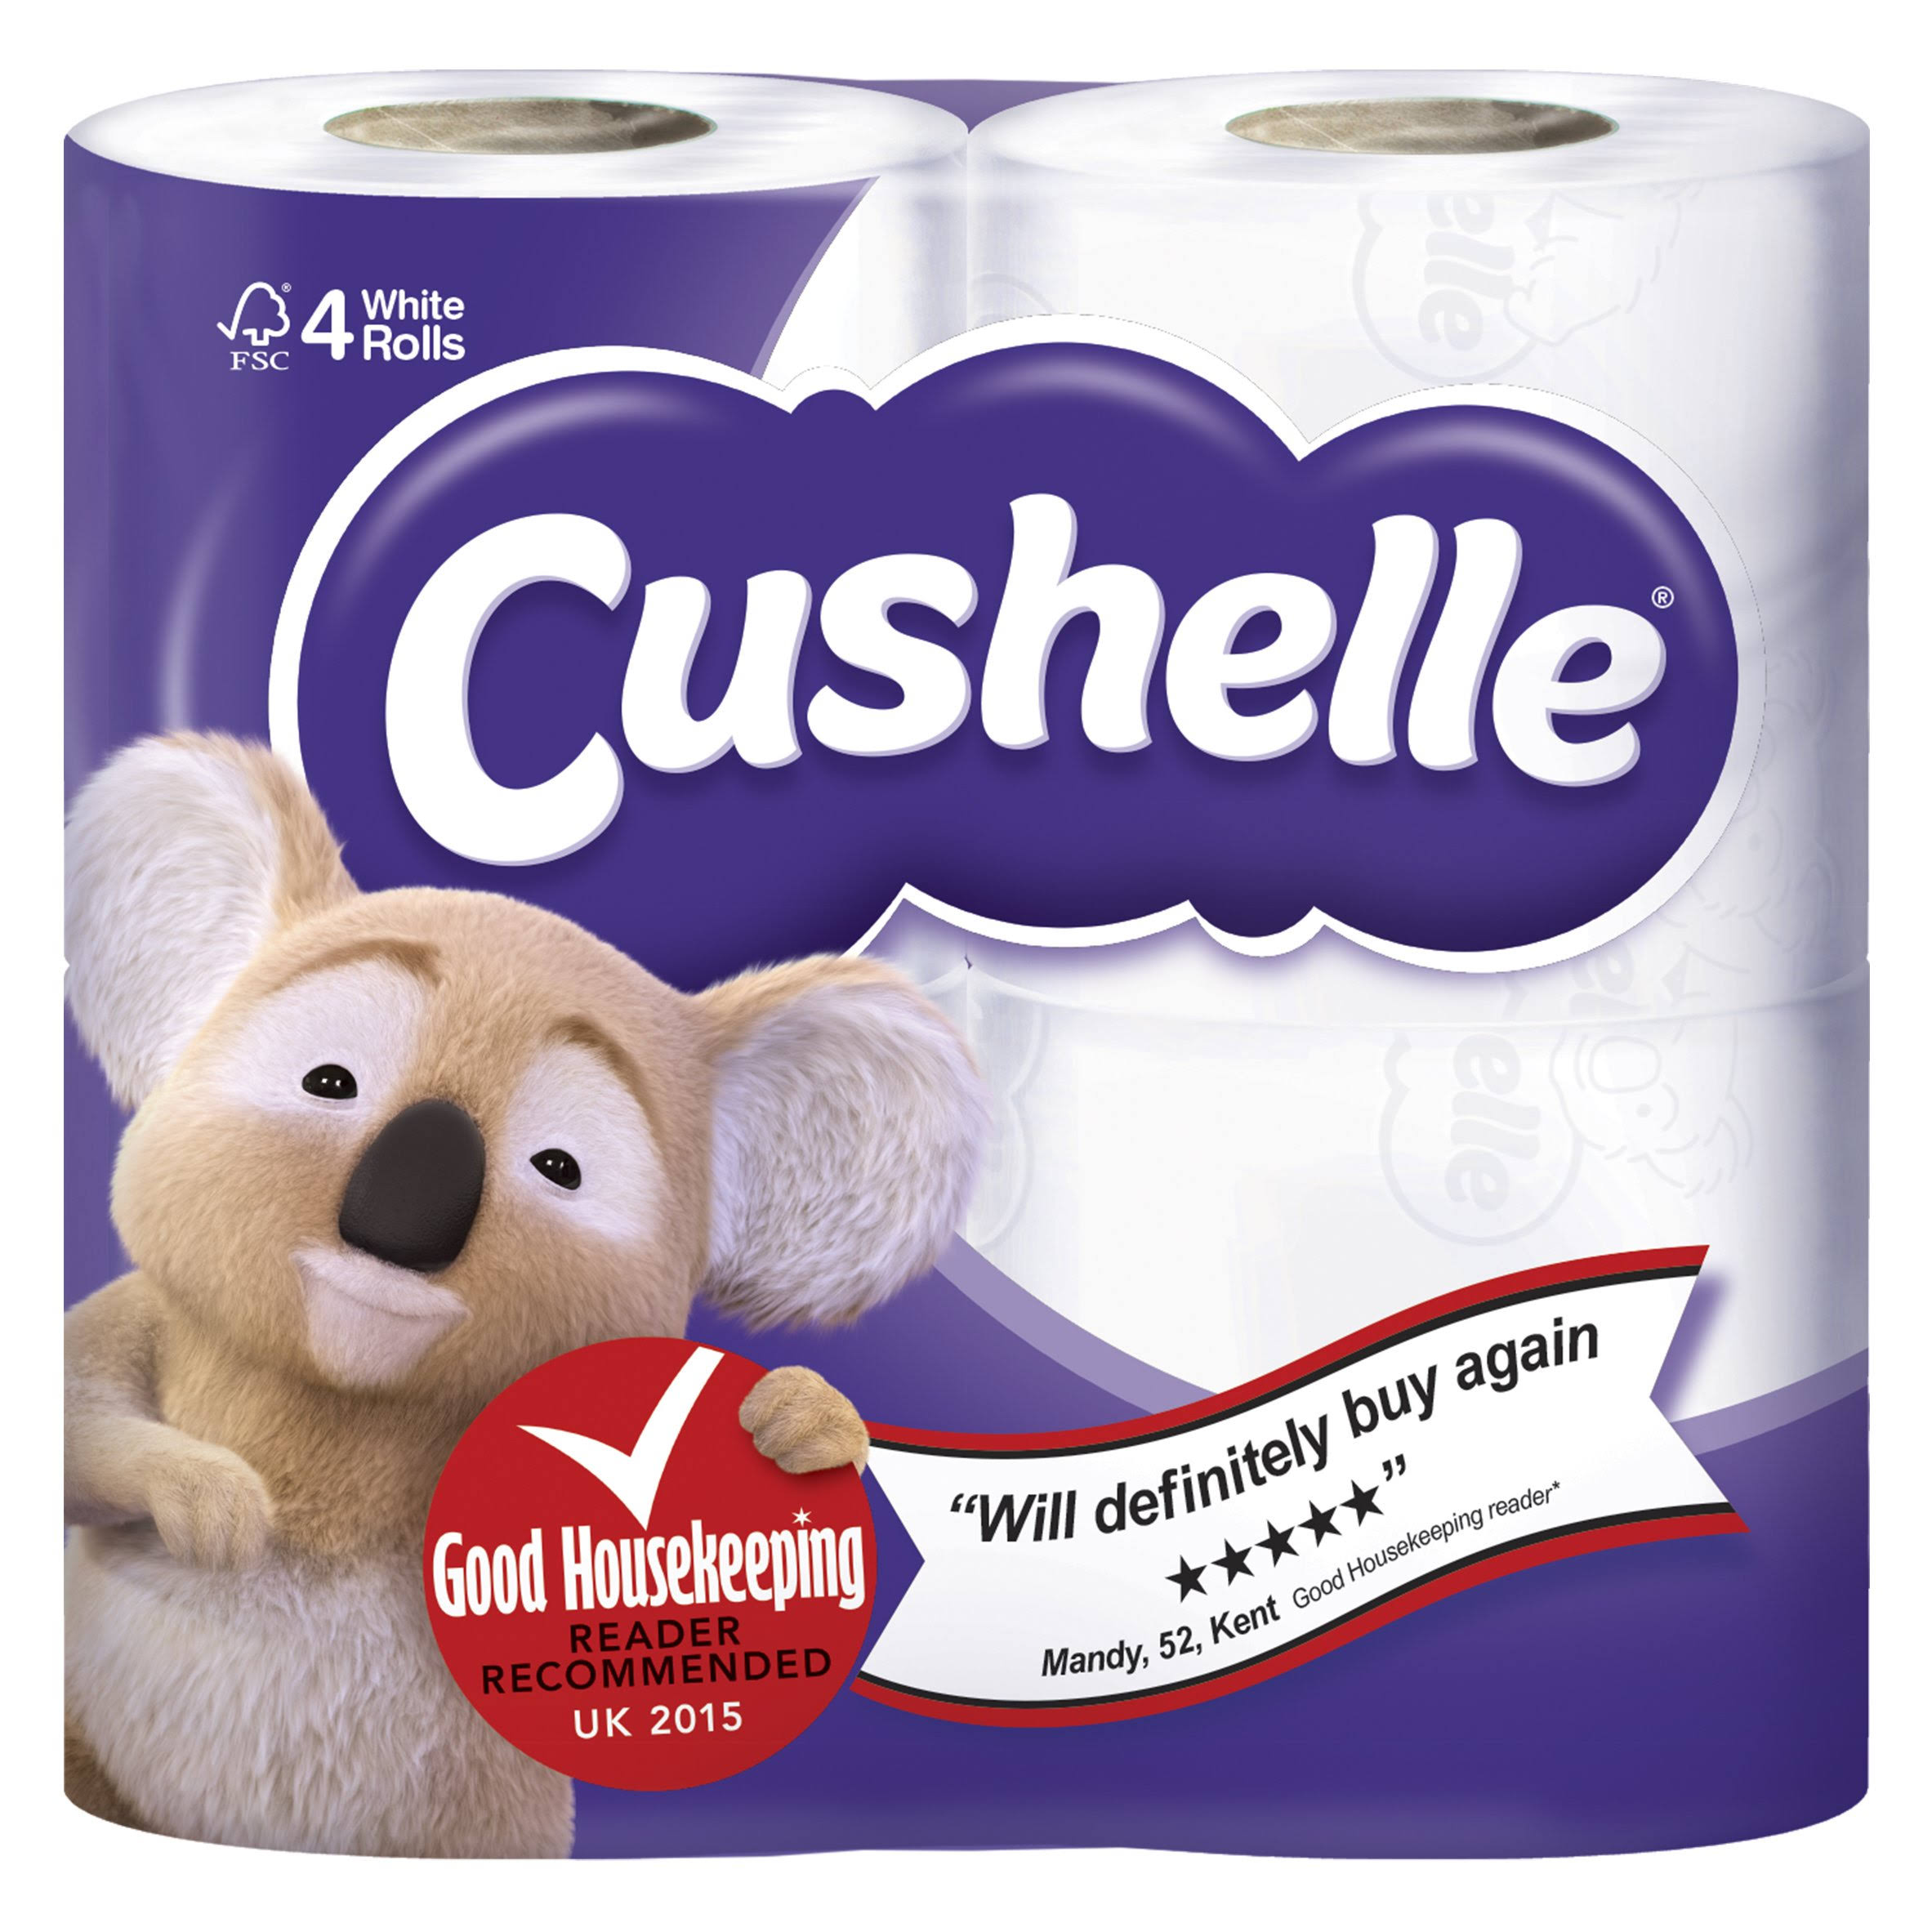 Cushelle Toilet Tissue - White, 4 Roll